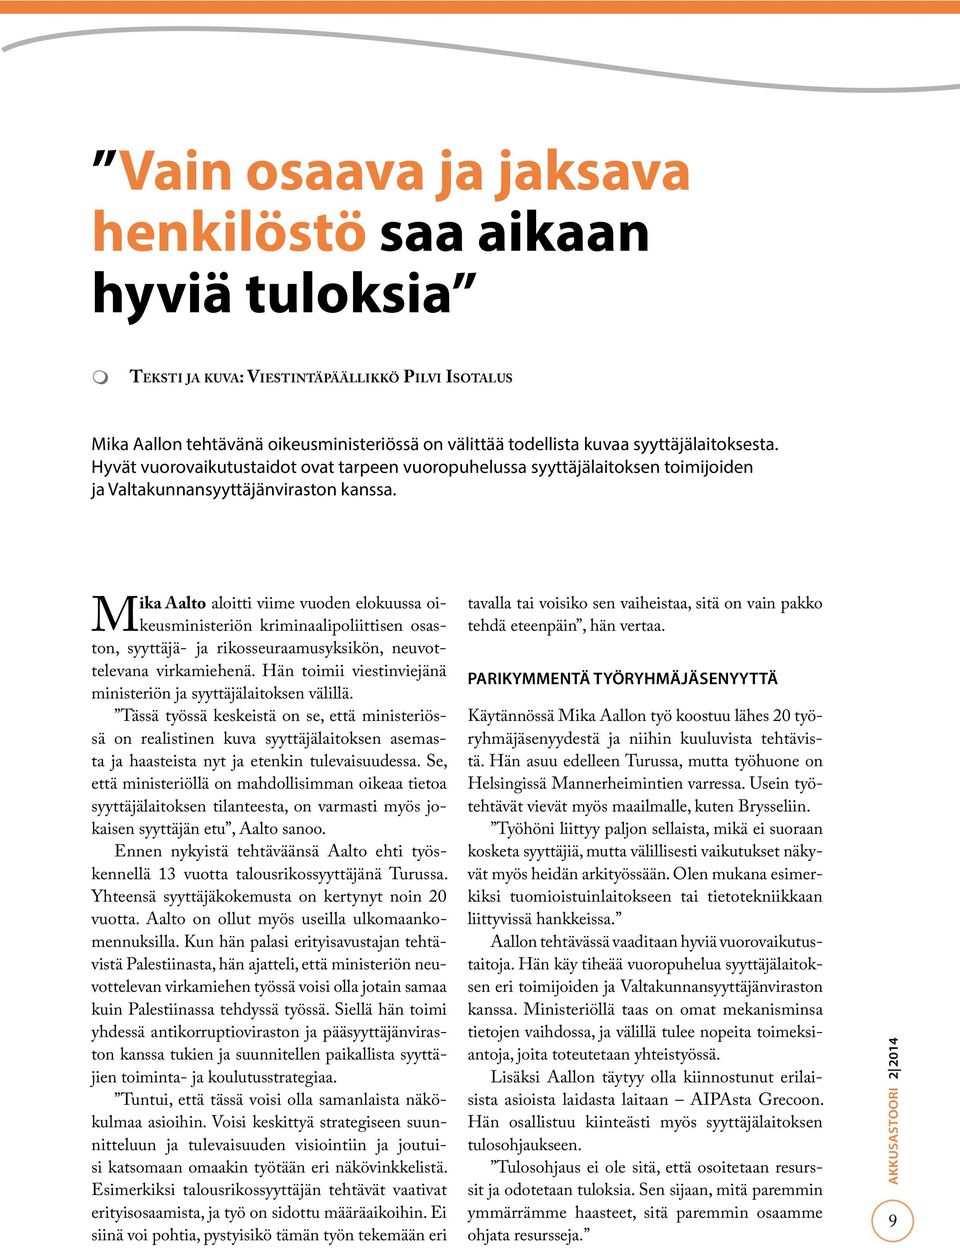 Mika Aalto aloitti viime vuoden elokuussa oikeusministeriön kriminaalipoliittisen osaston, syyttäjä- ja rikosseuraamusyksikön, neuvottelevana virkamiehenä.